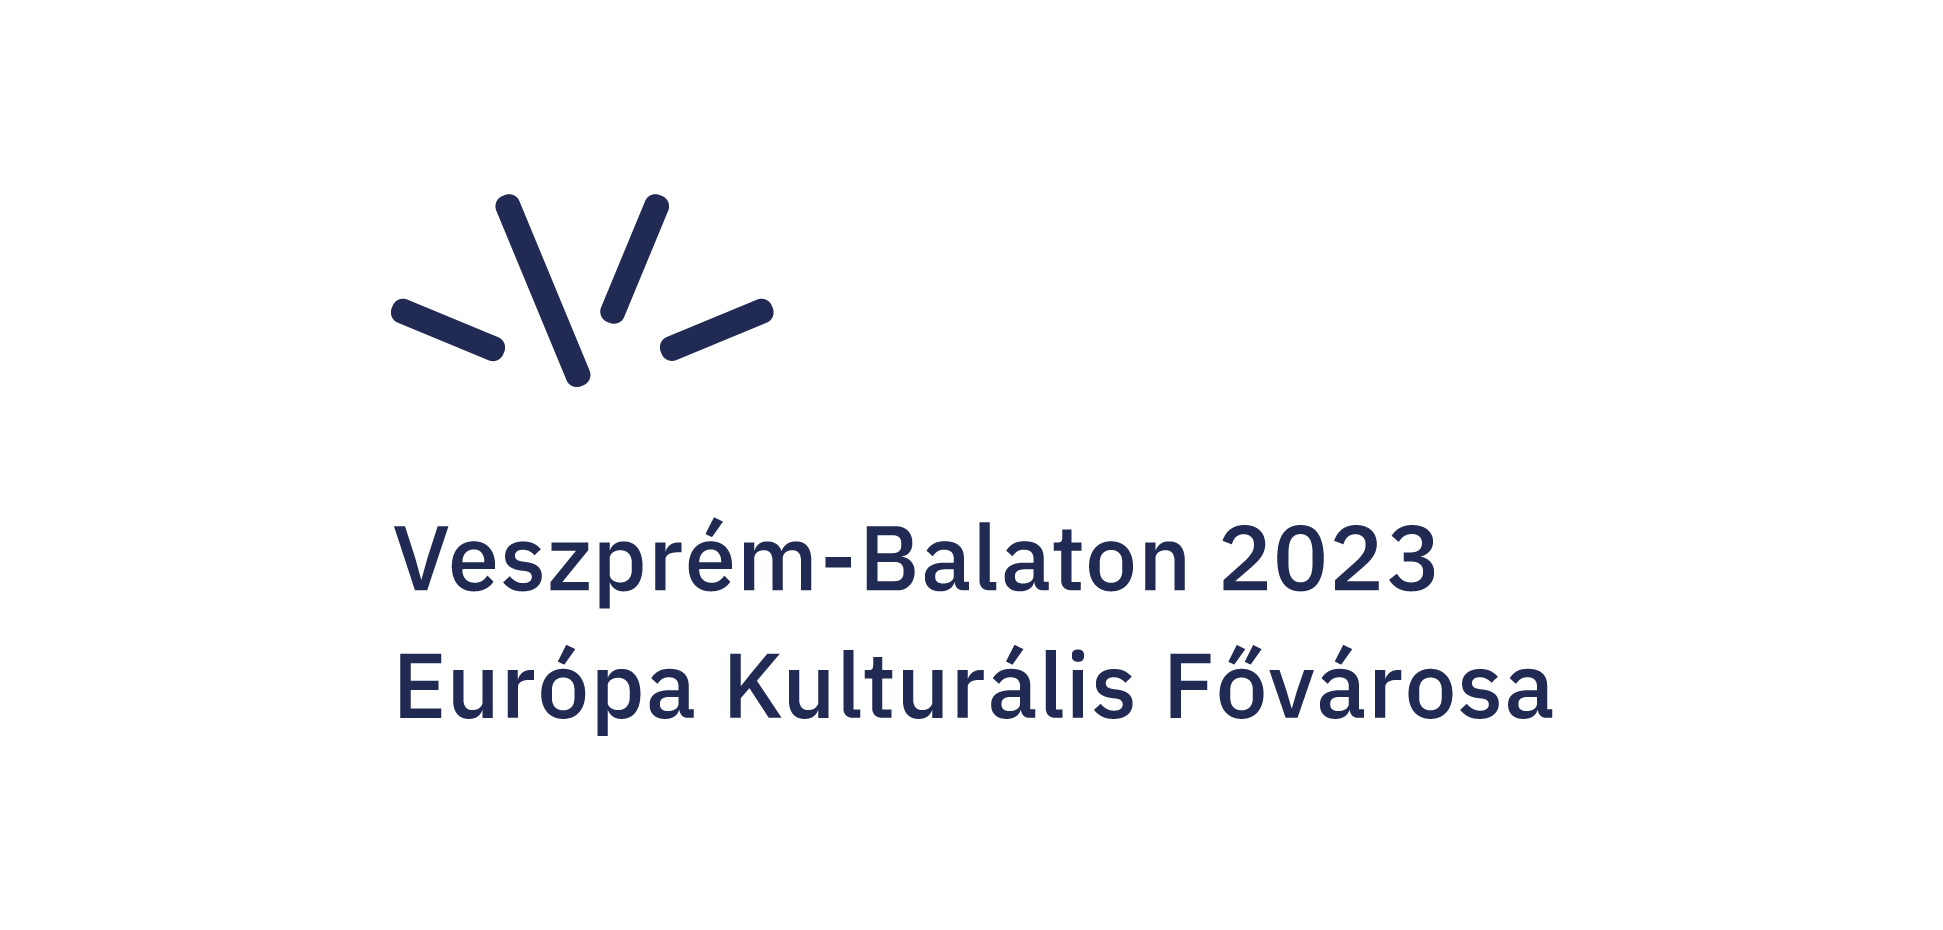 Veszprém-Balaton 2023 logo - Európa Kulturális Fővárosa